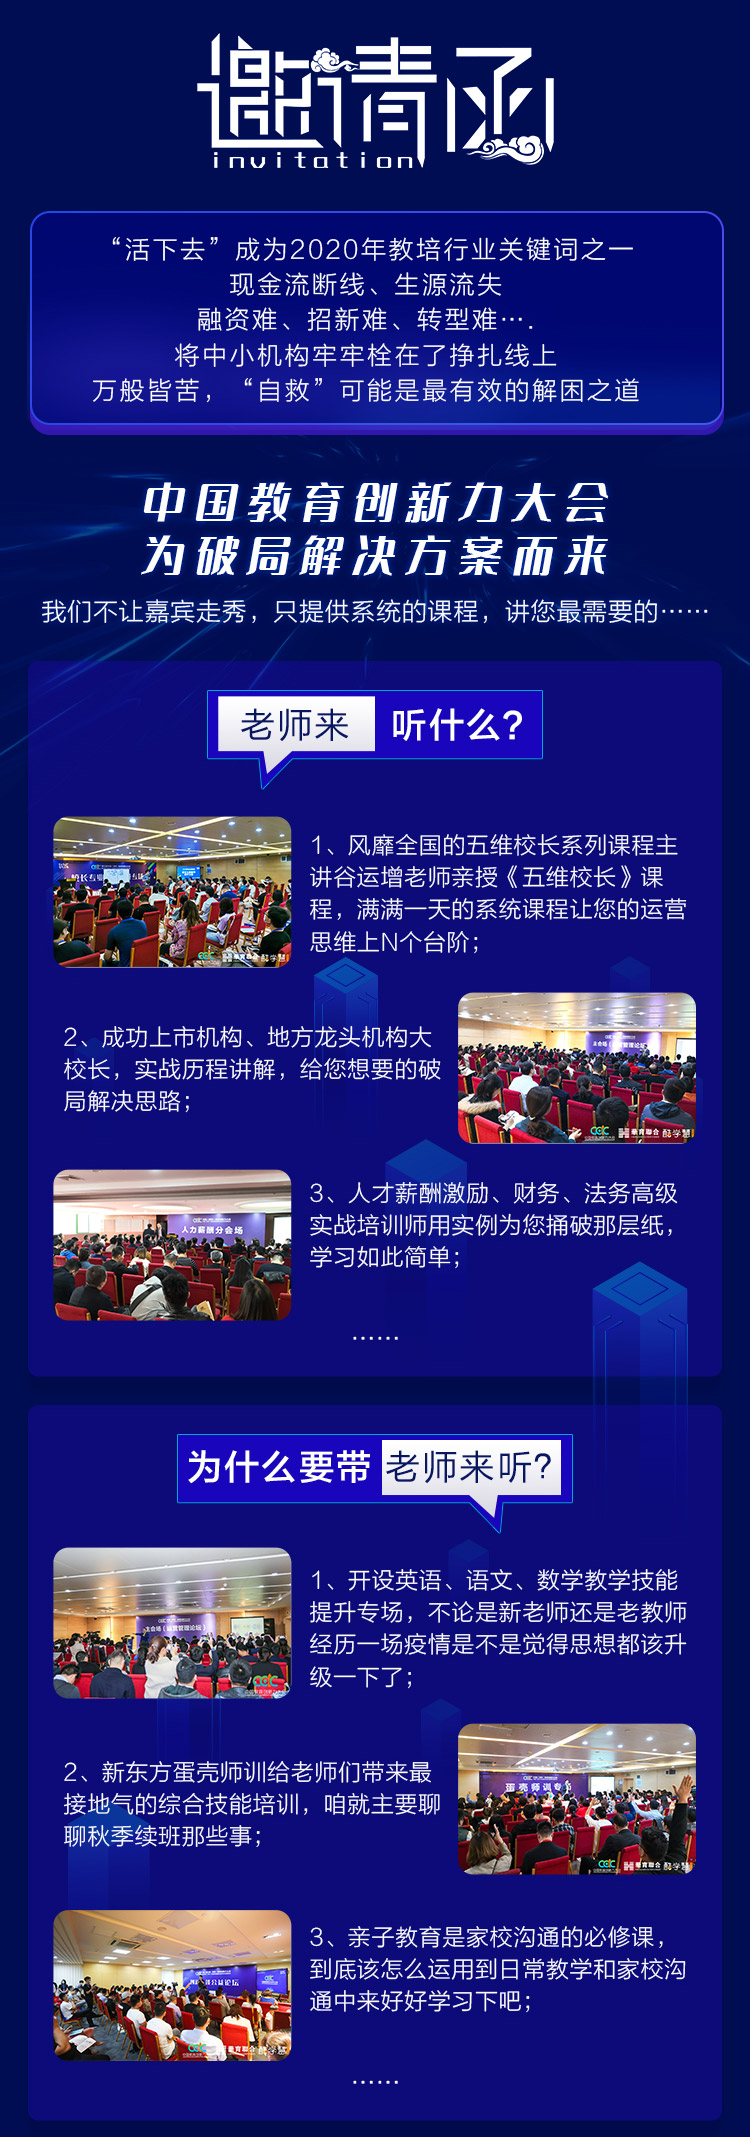 2020中國鄭州教育創新力大會